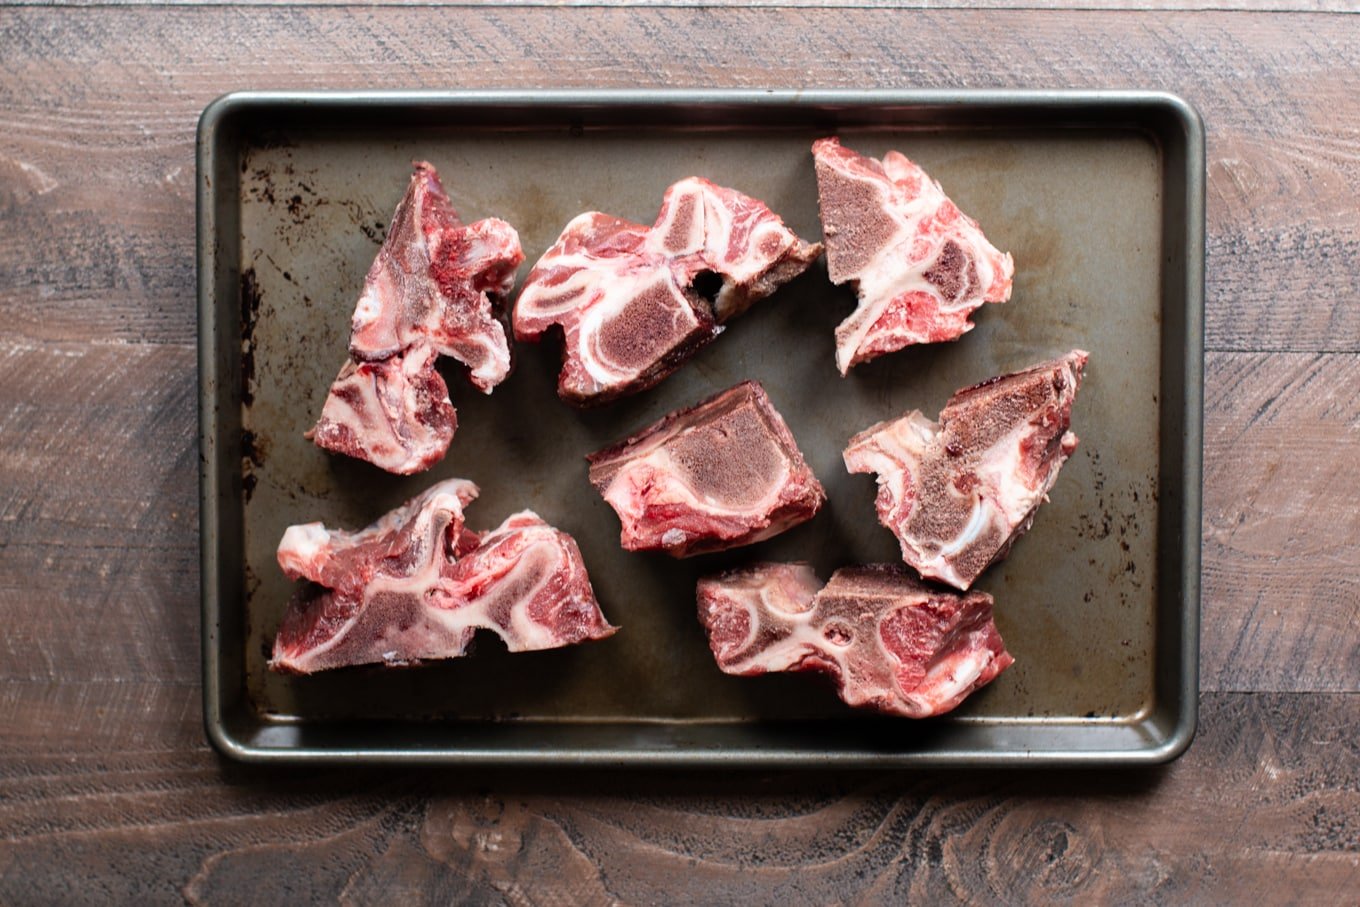 beef bones on sheet pan, uncooked.